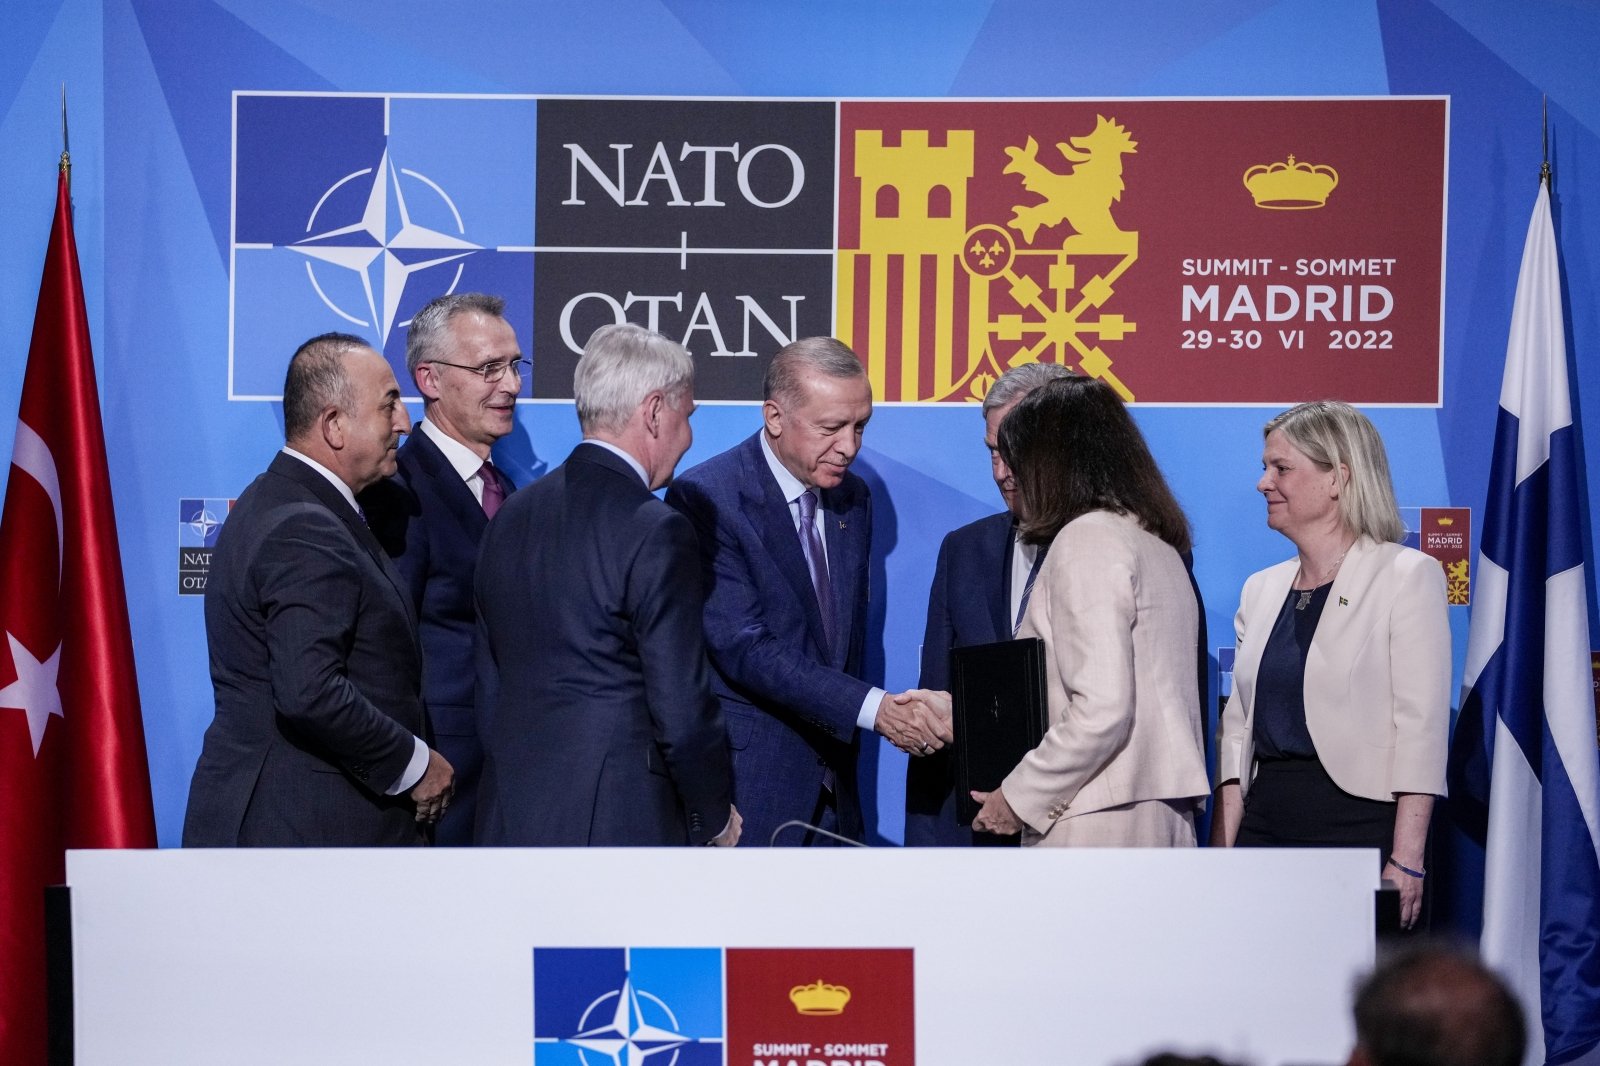 Швеция в нато официально. Саммит НАТО В Мадриде 2022. Саммит НАТО 2022. Турция Швеция Финляндия НАТО.